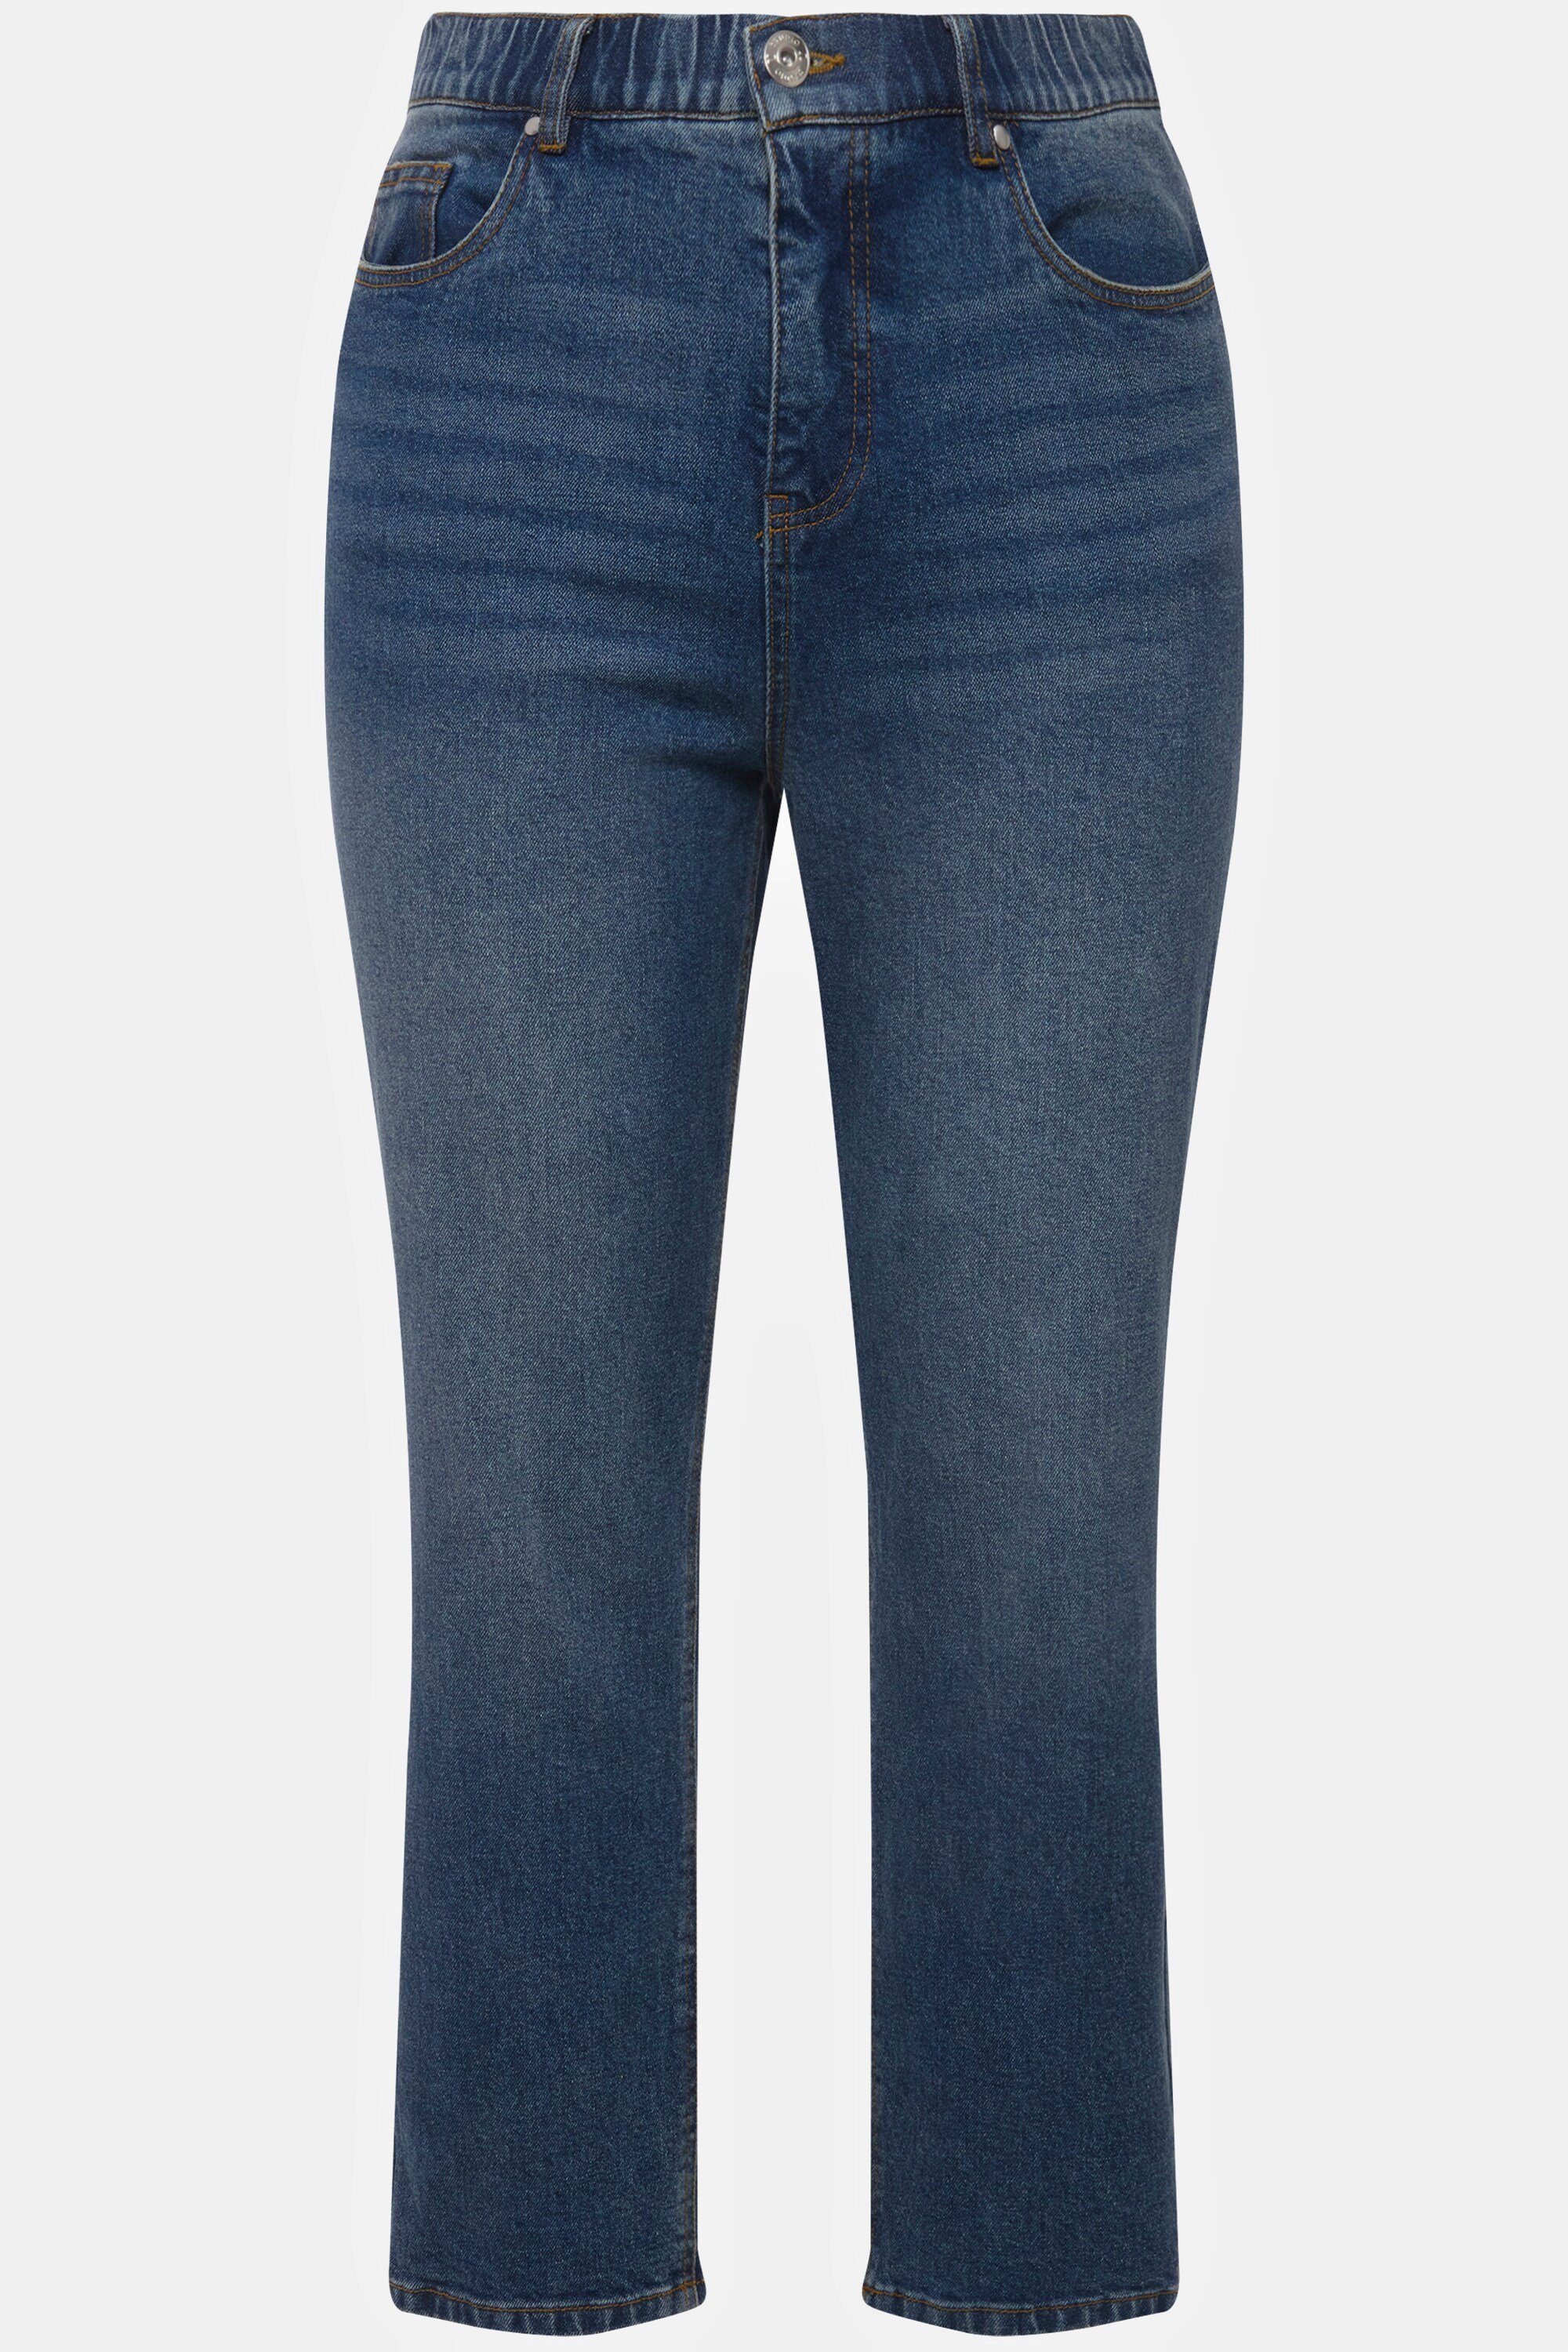 Studio Untold Funktionshose Mom-Jeans wide blue 5-Pocket Elastikbund denim Legs